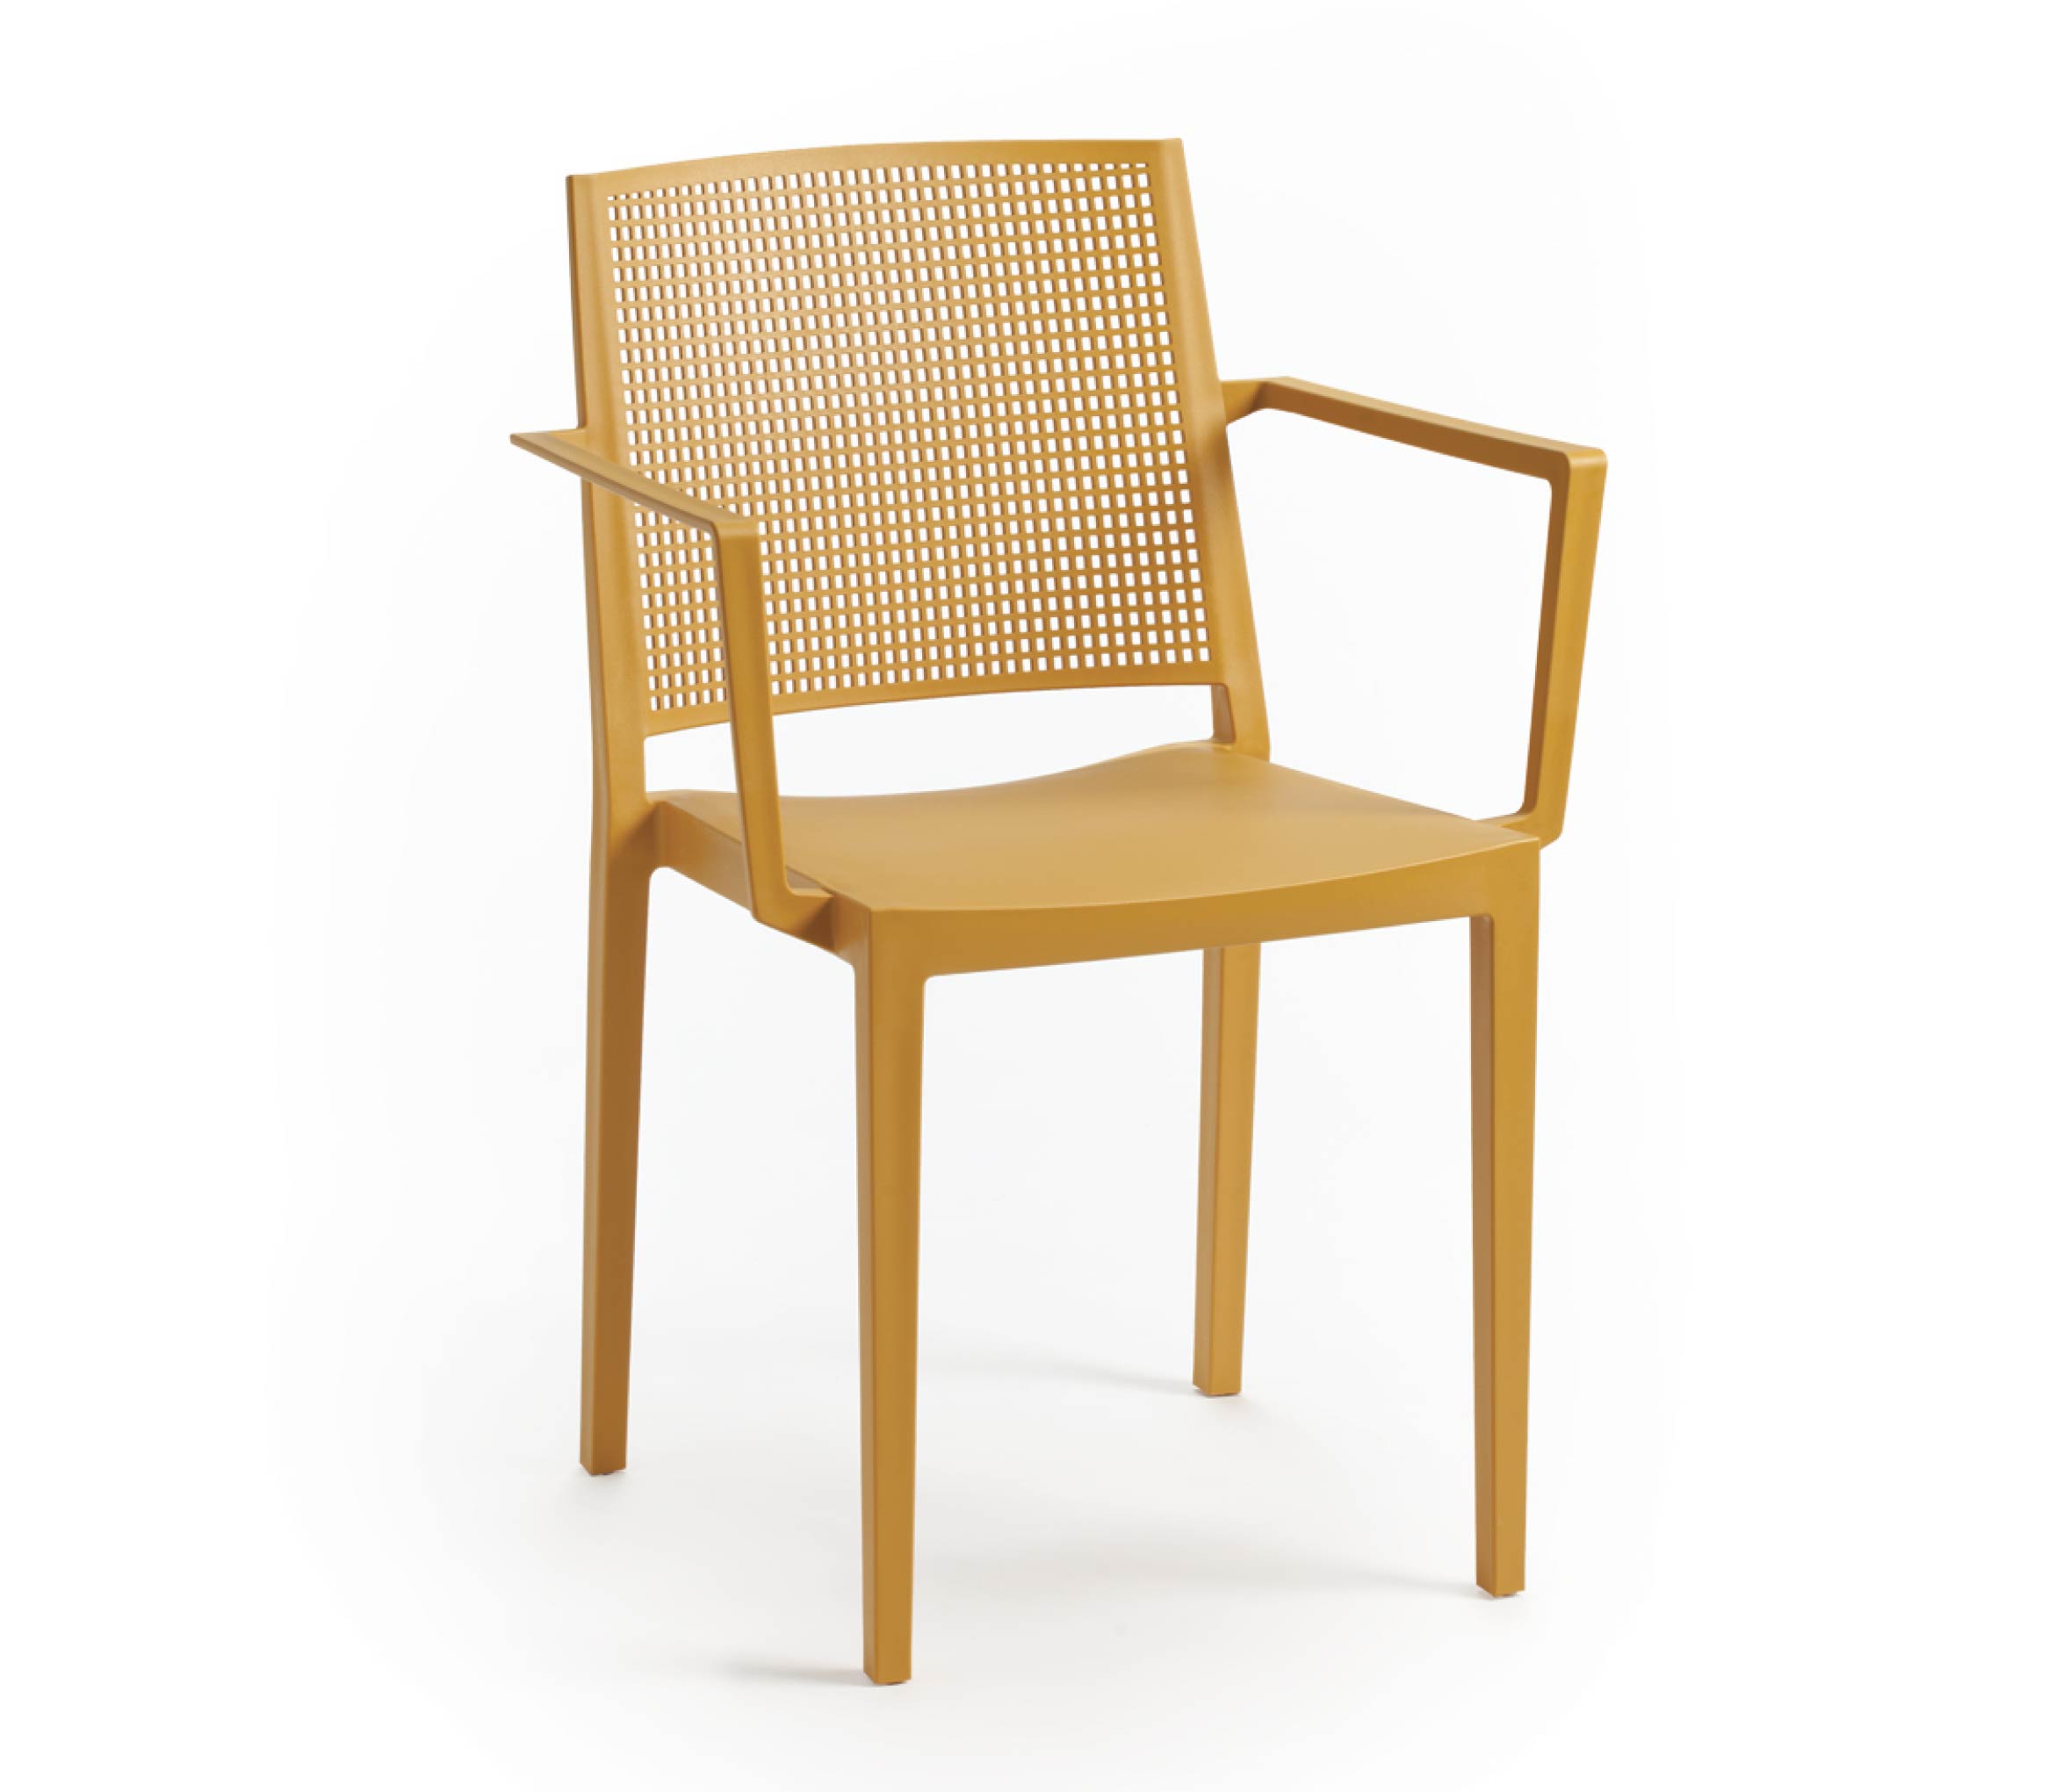 TENSAI_FURNITURE_GRID_ARMCHAIR_MUSTARD_205 plastic chair